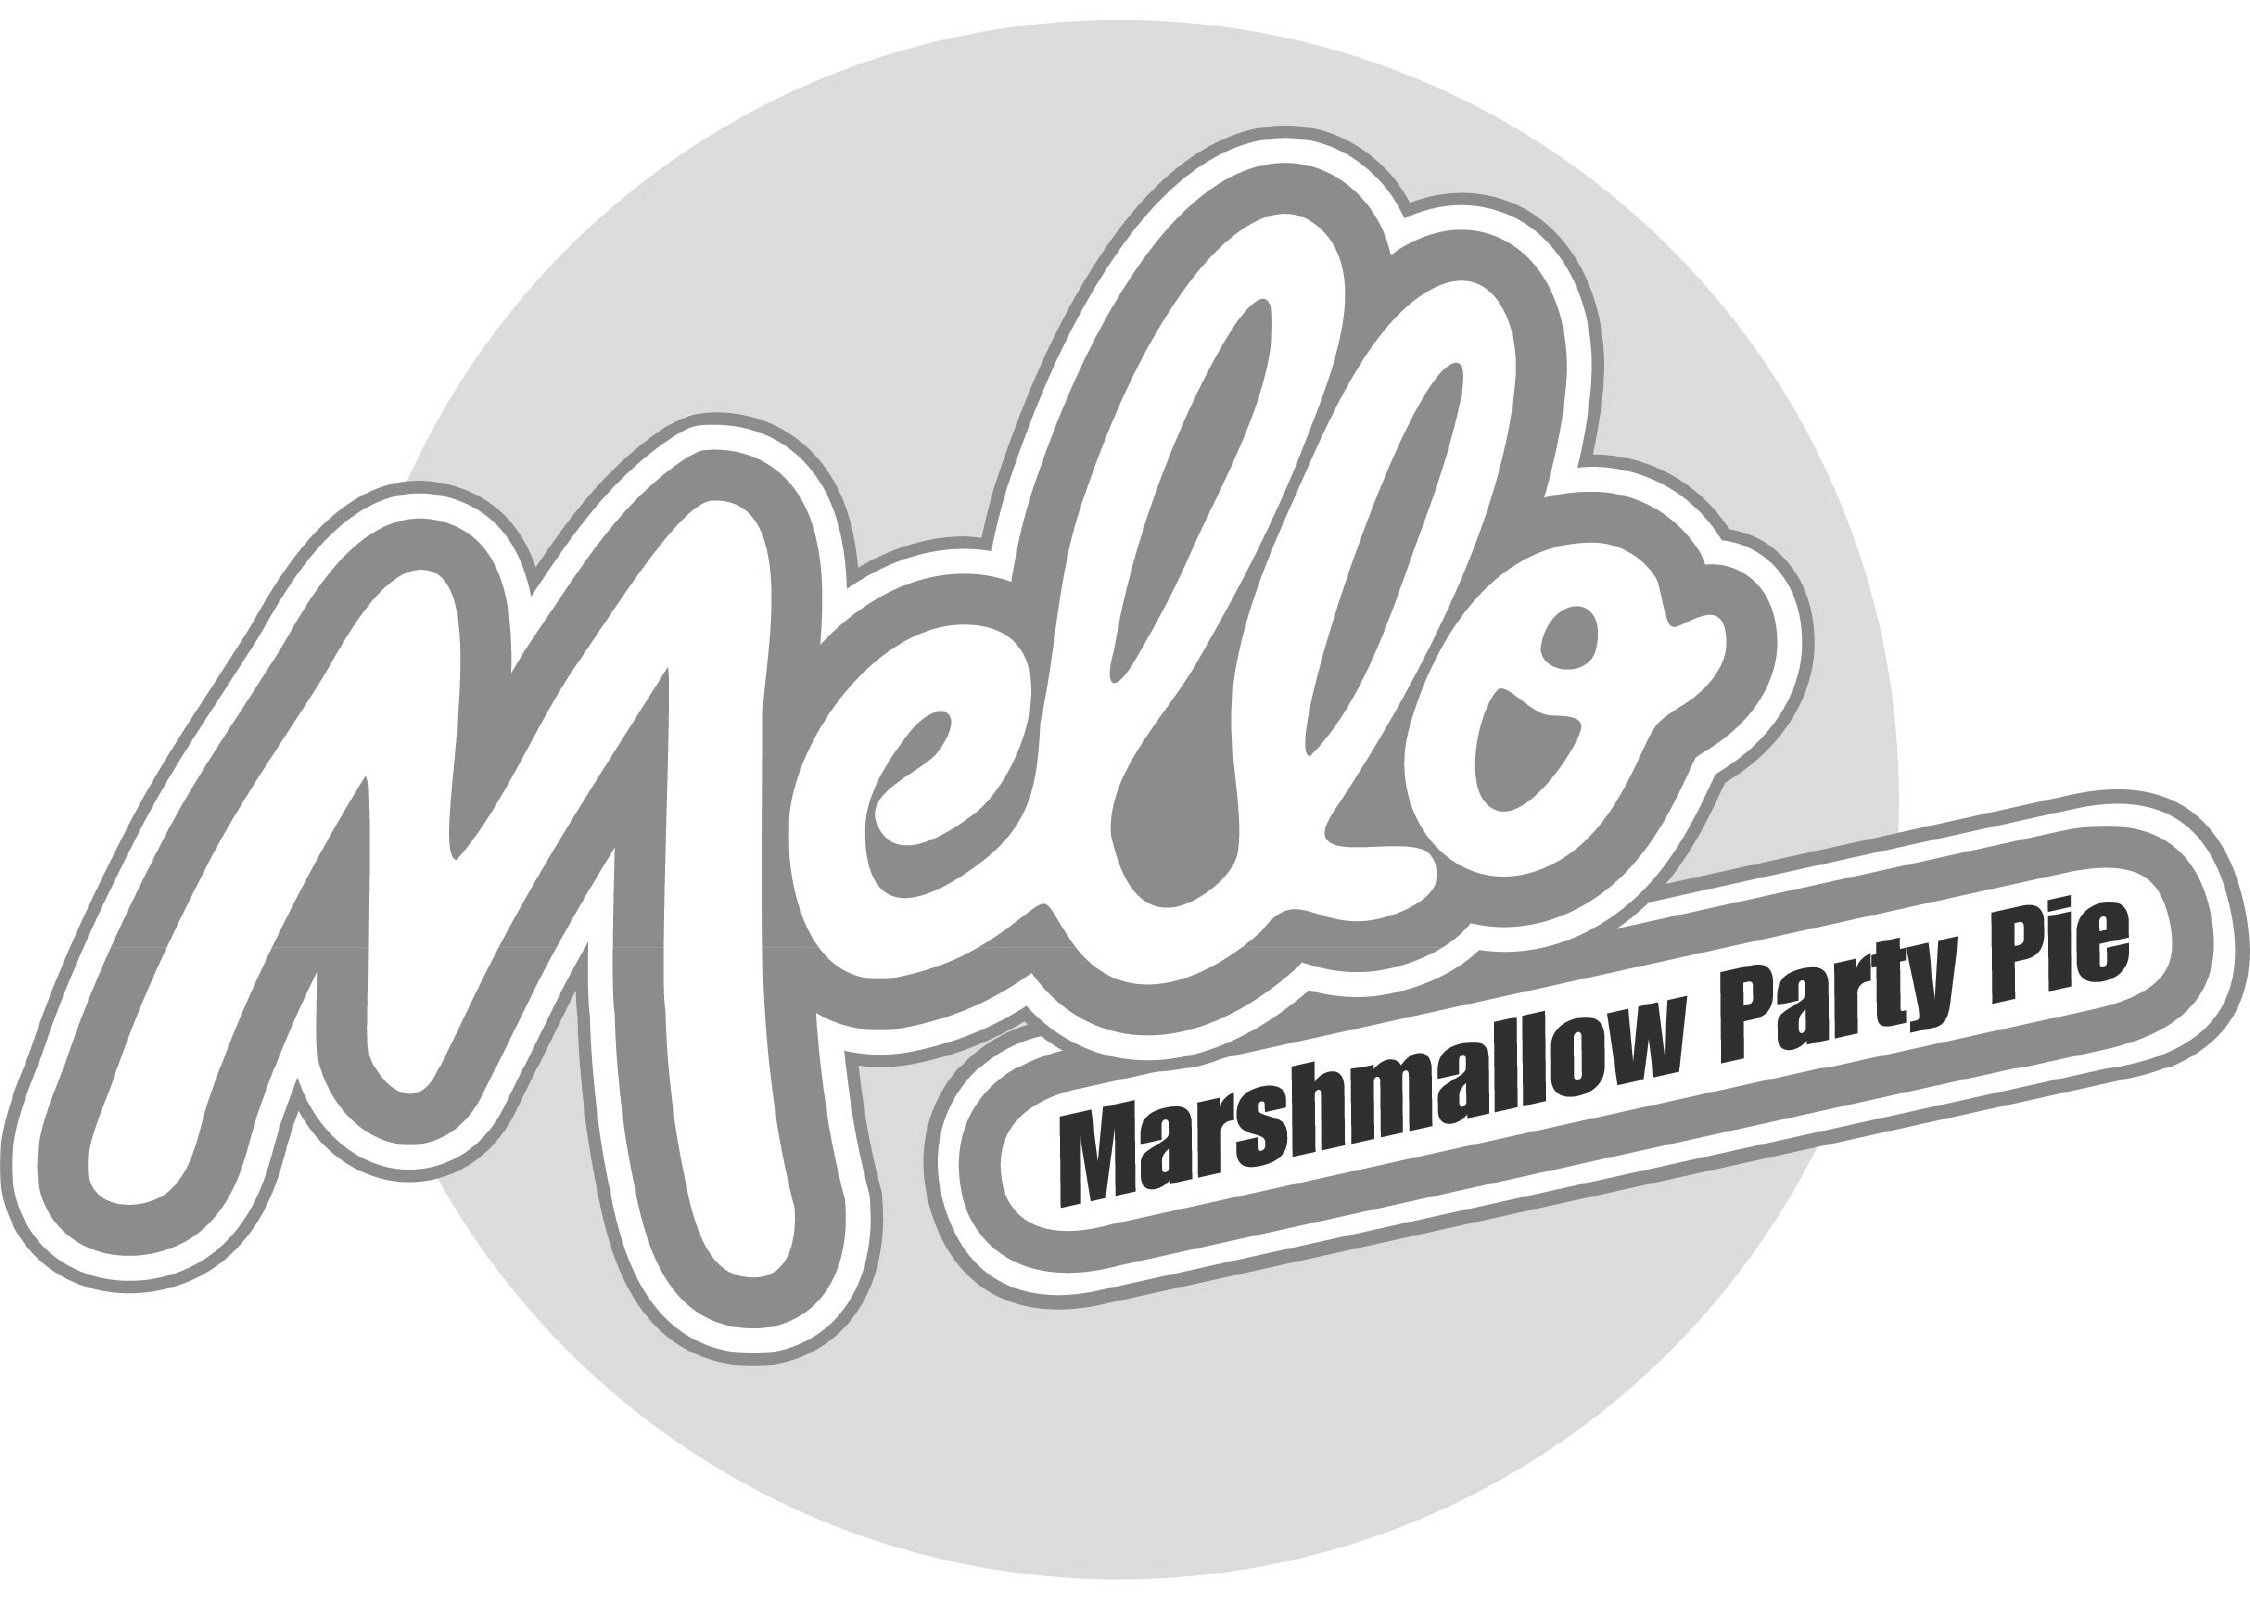  MELLO MARSHMALLOW PARTY PIE